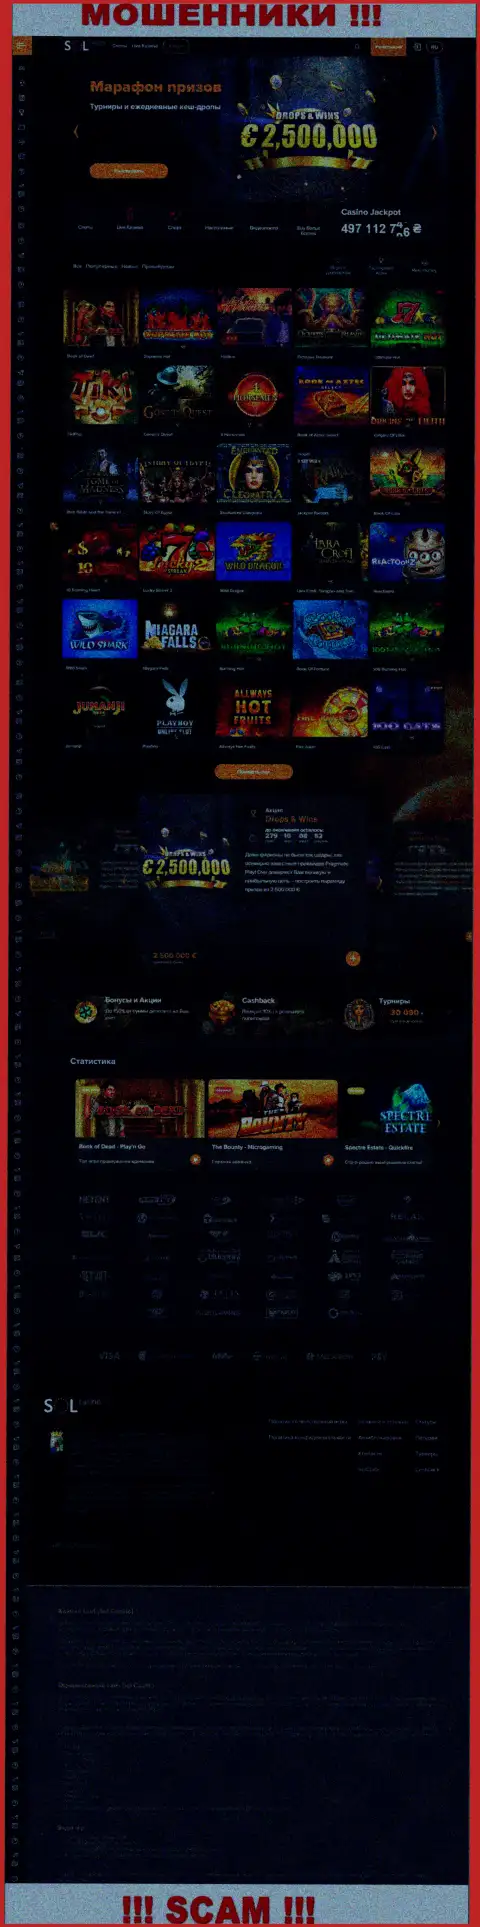 Главная страница интернет-портала махинаторов Sol Casino